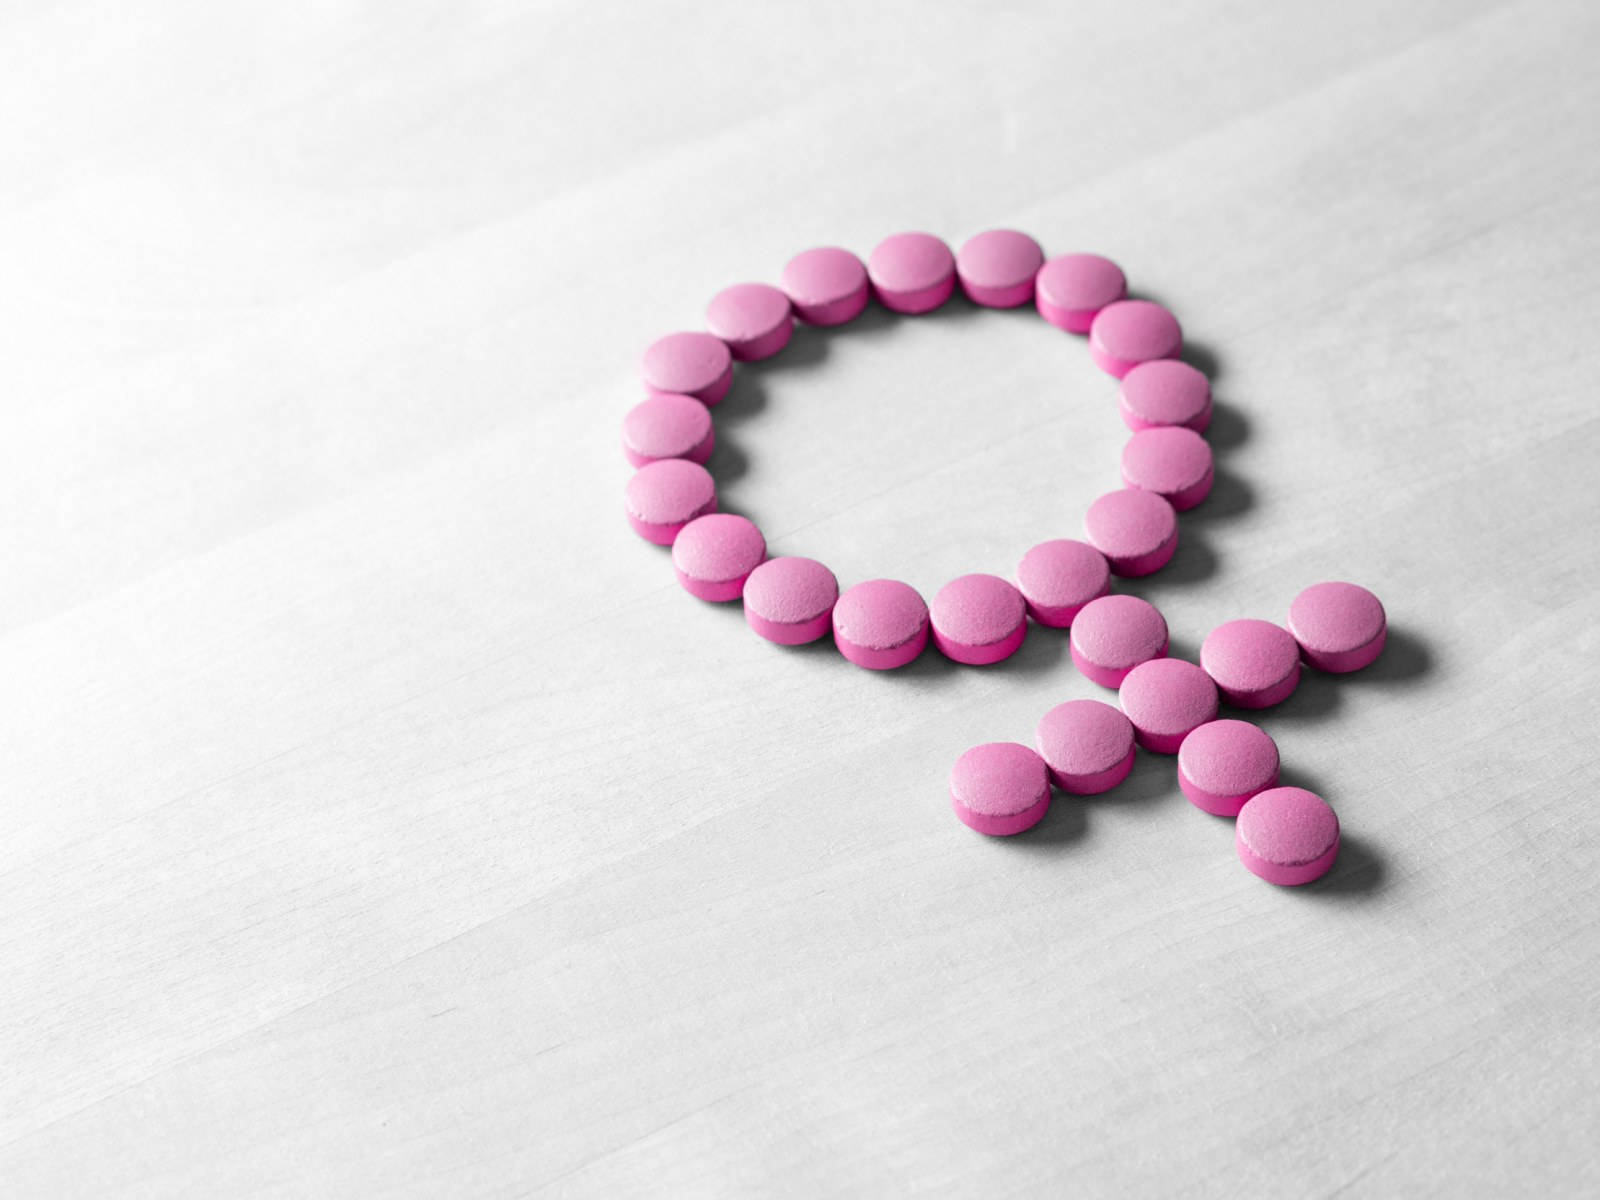 Píldorasde Hormonas Para La Menopausia Fondo de pantalla